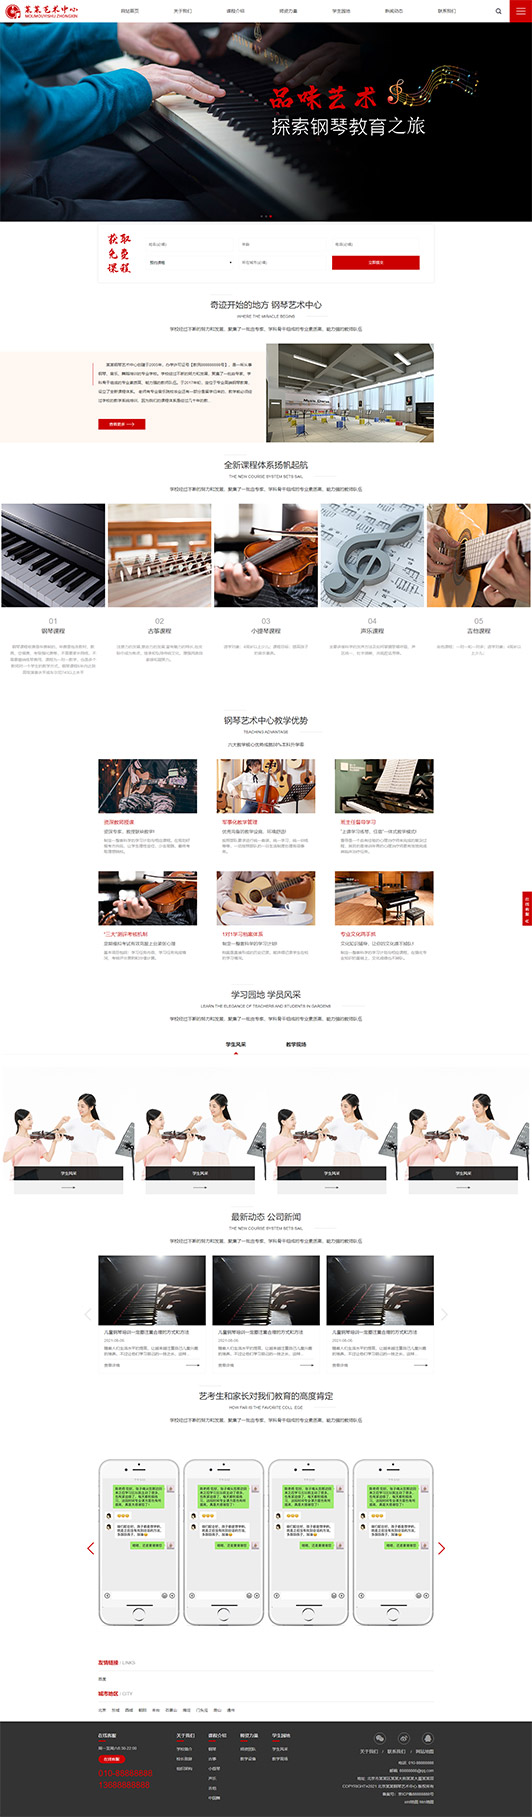 新乡钢琴艺术培训公司响应式企业网站